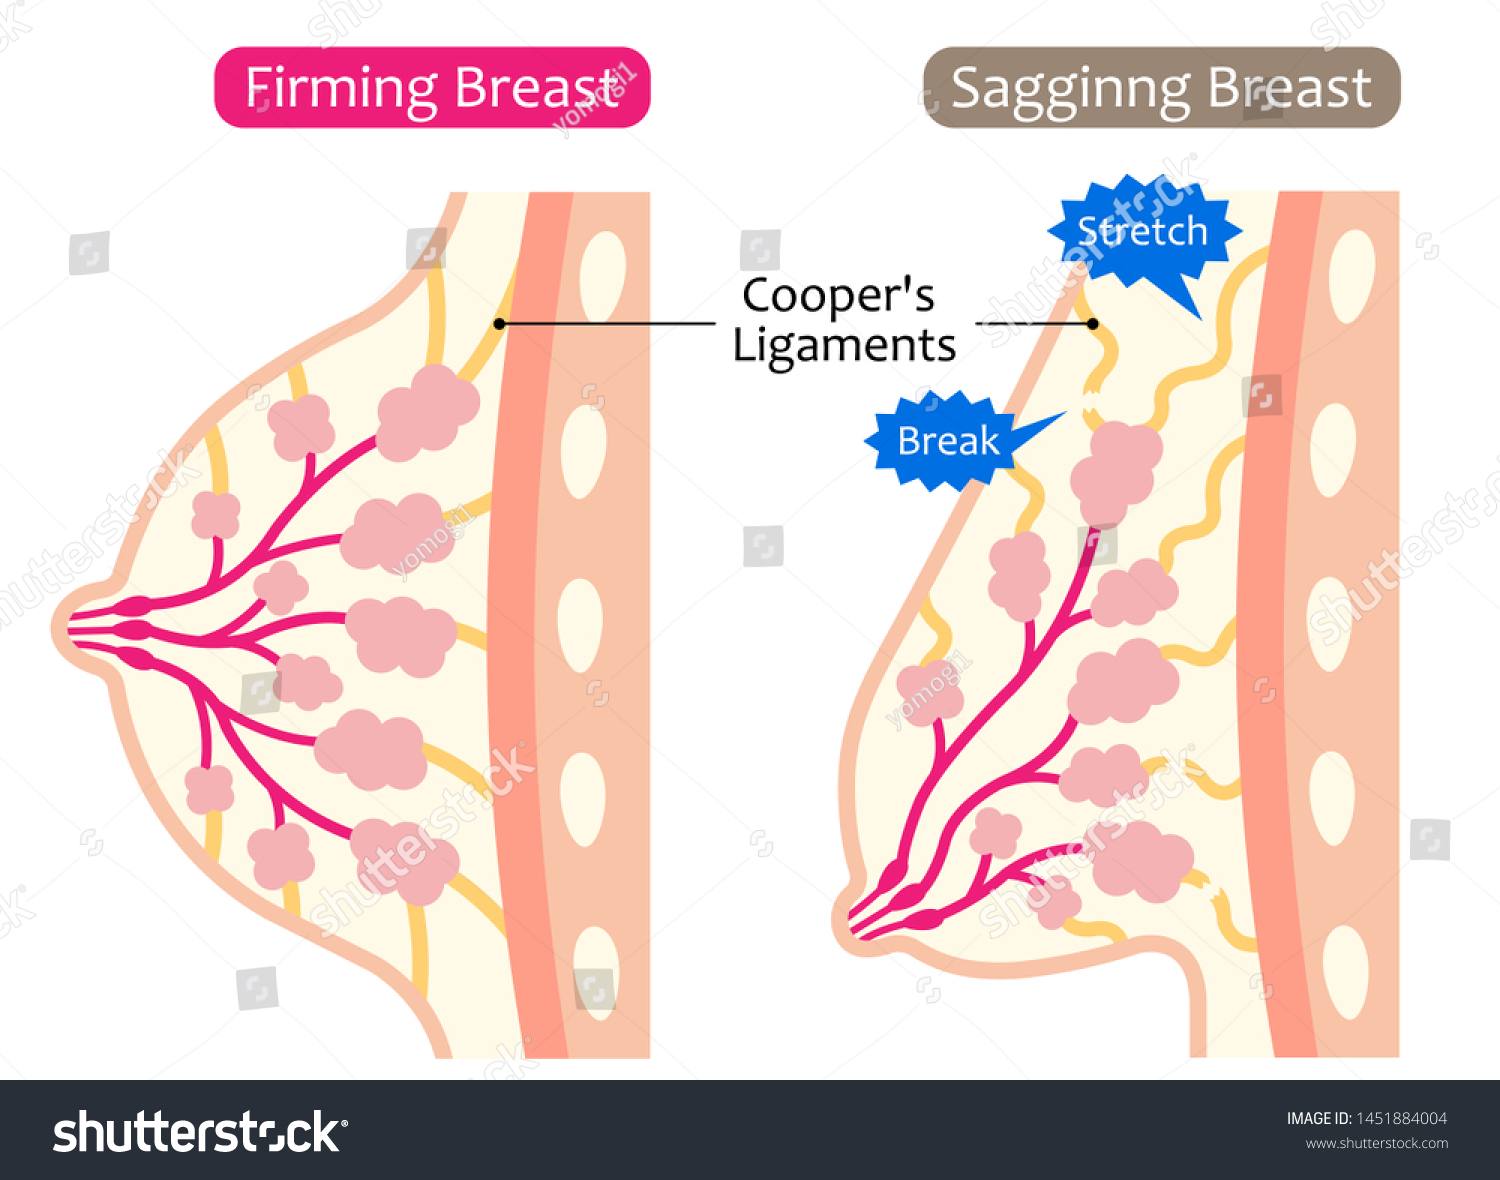 Sagging Breast Pics